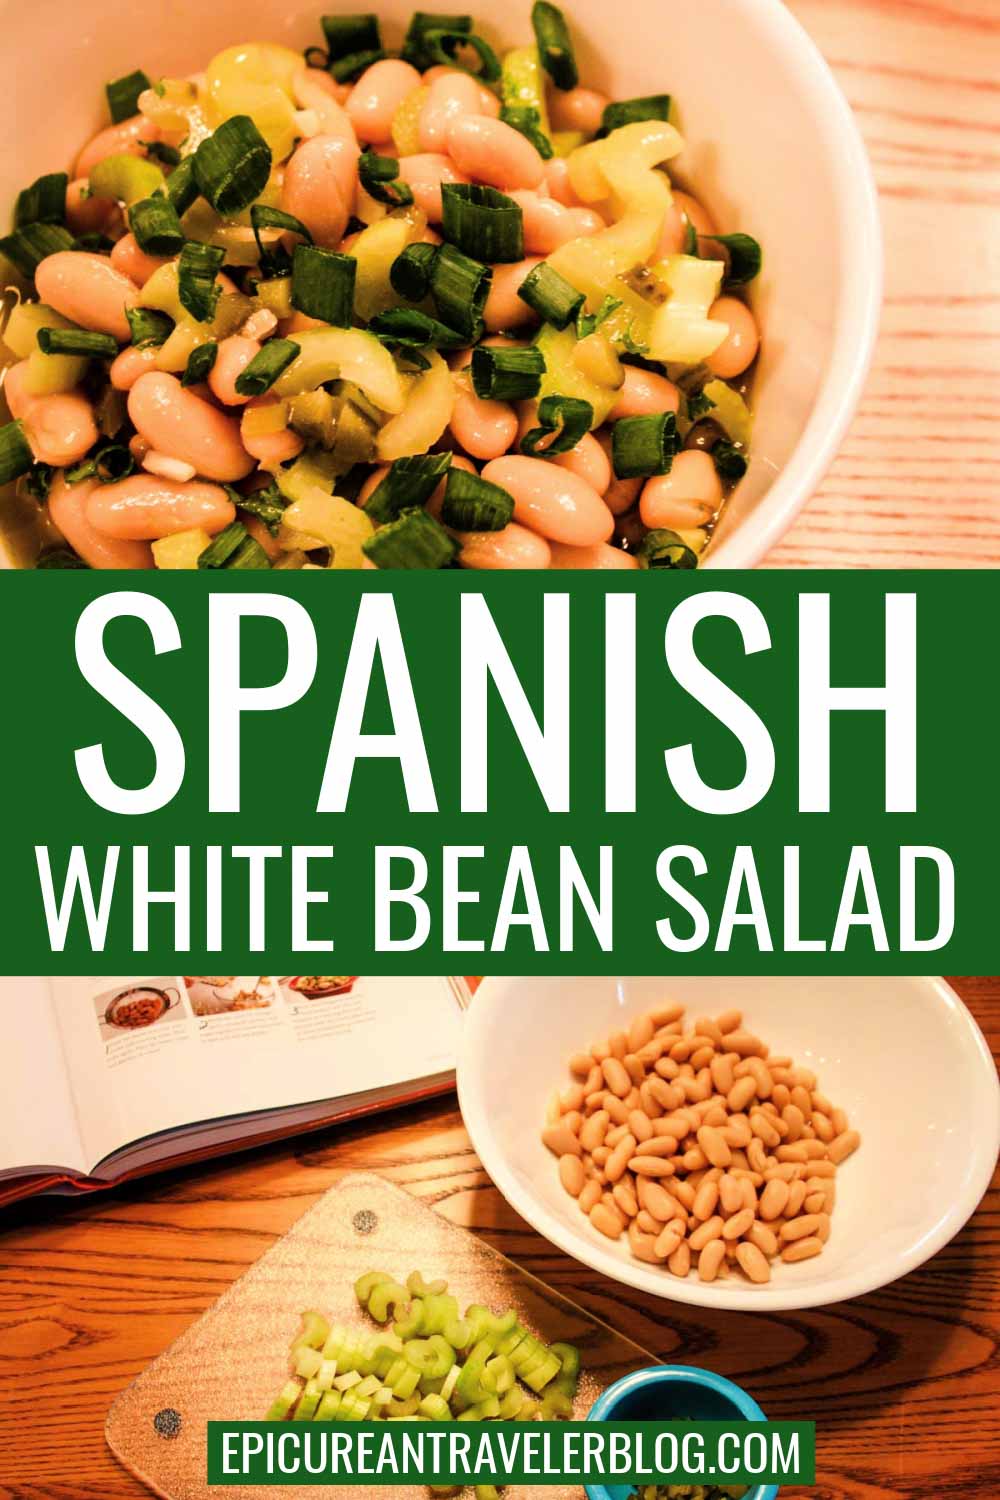 Spanish white bean salad